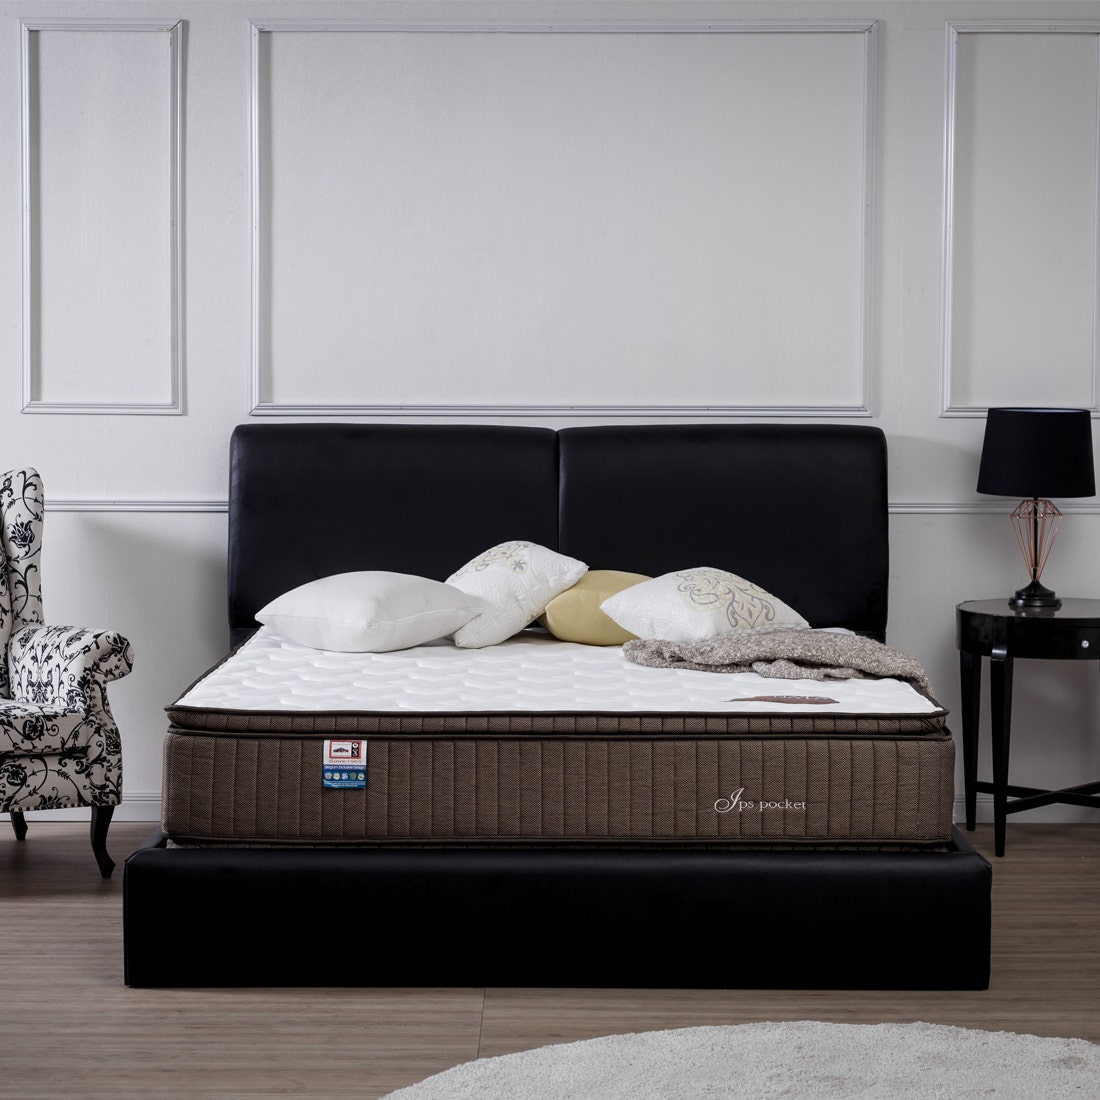 39001270-mattress-bedding-mattresses-pocket-spring-mattress-31